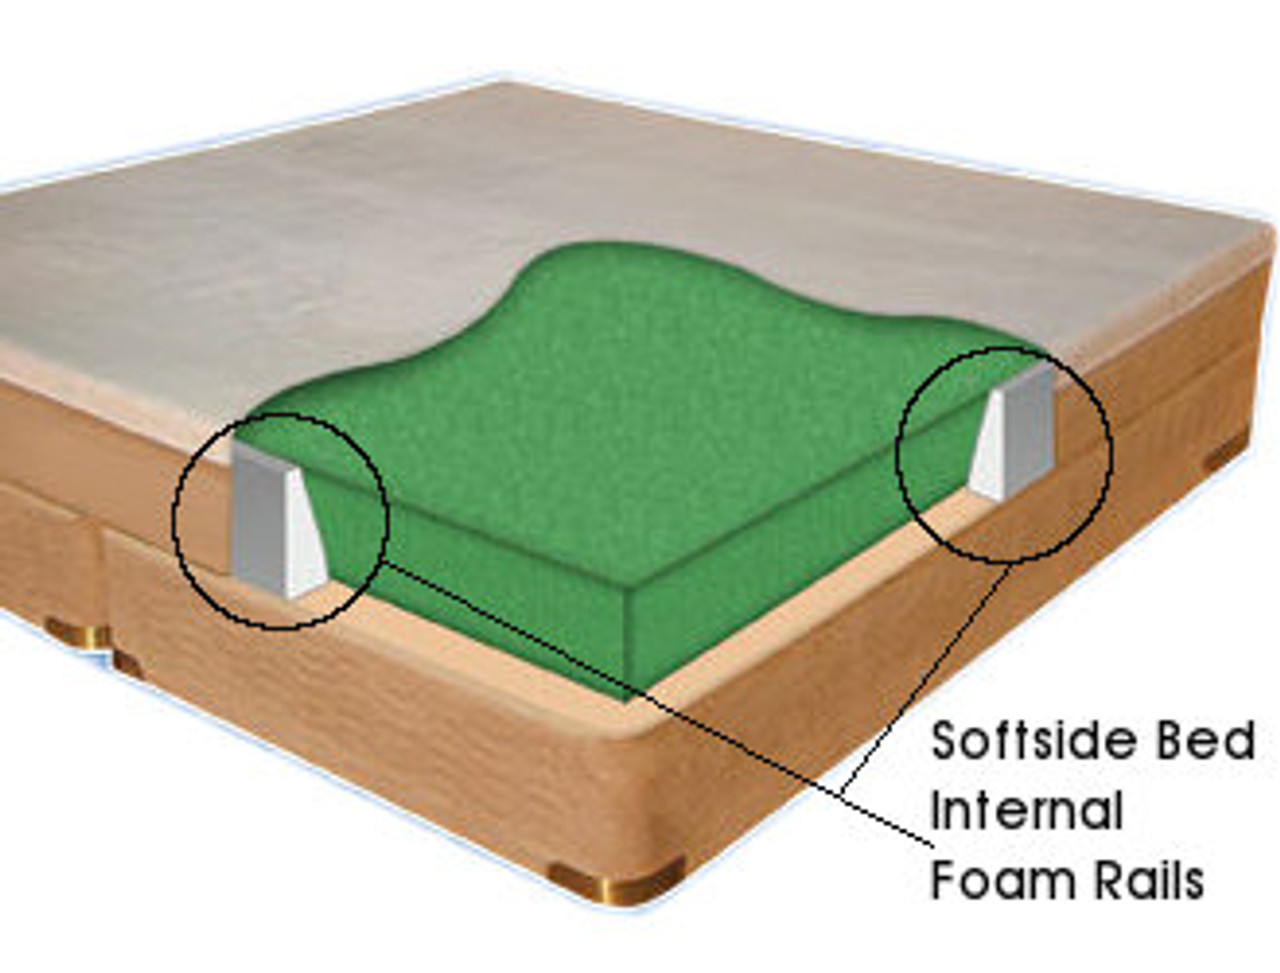 Sodftside Waterbed Rails. Internal Foam Rails for a softside waterbed.